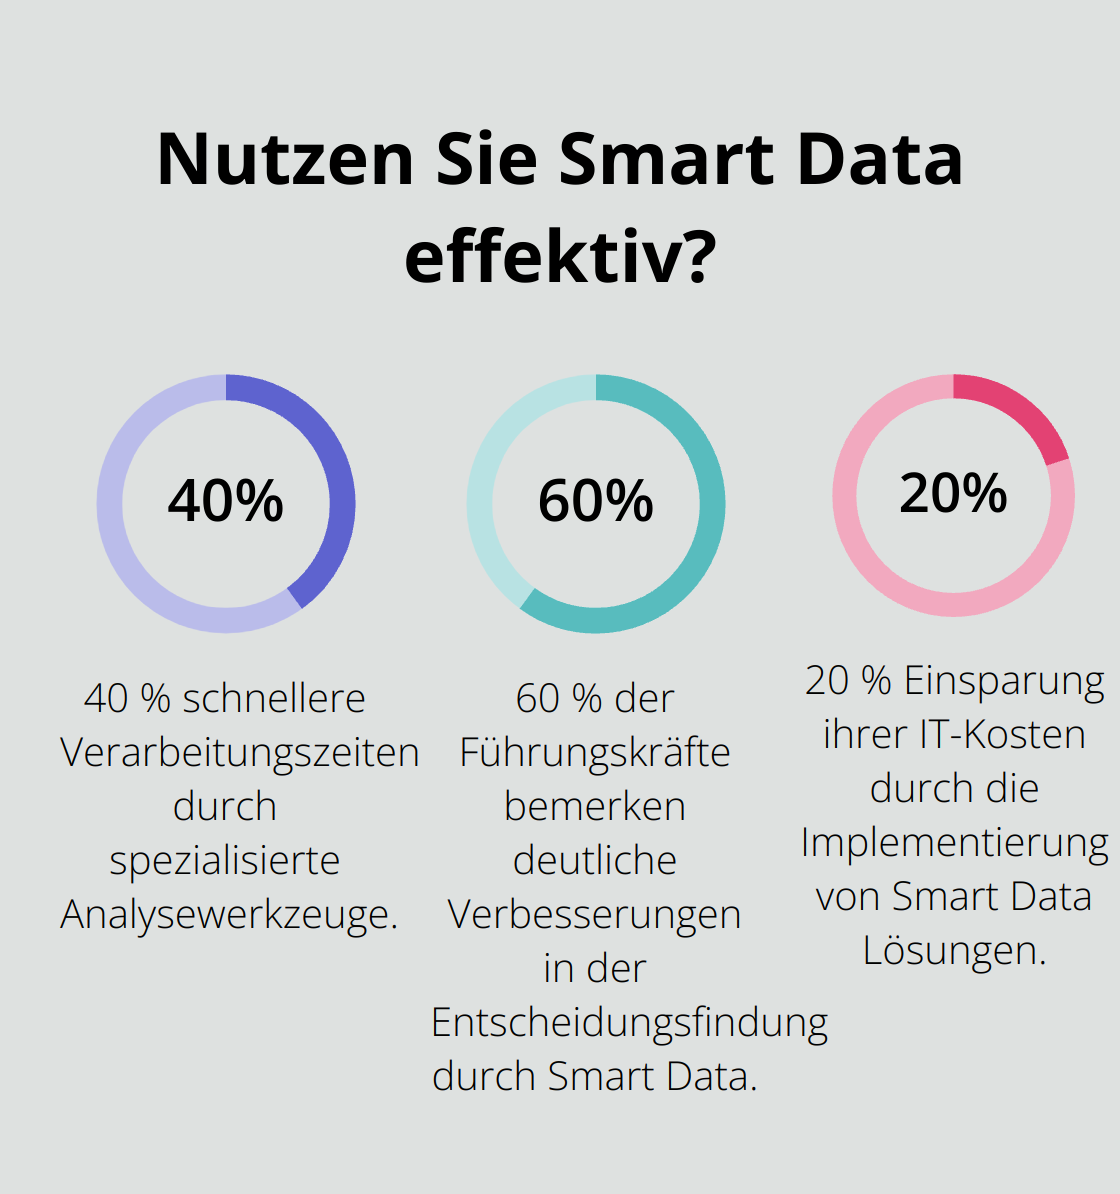 Fact - Nutzen Sie Smart Data effektiv?